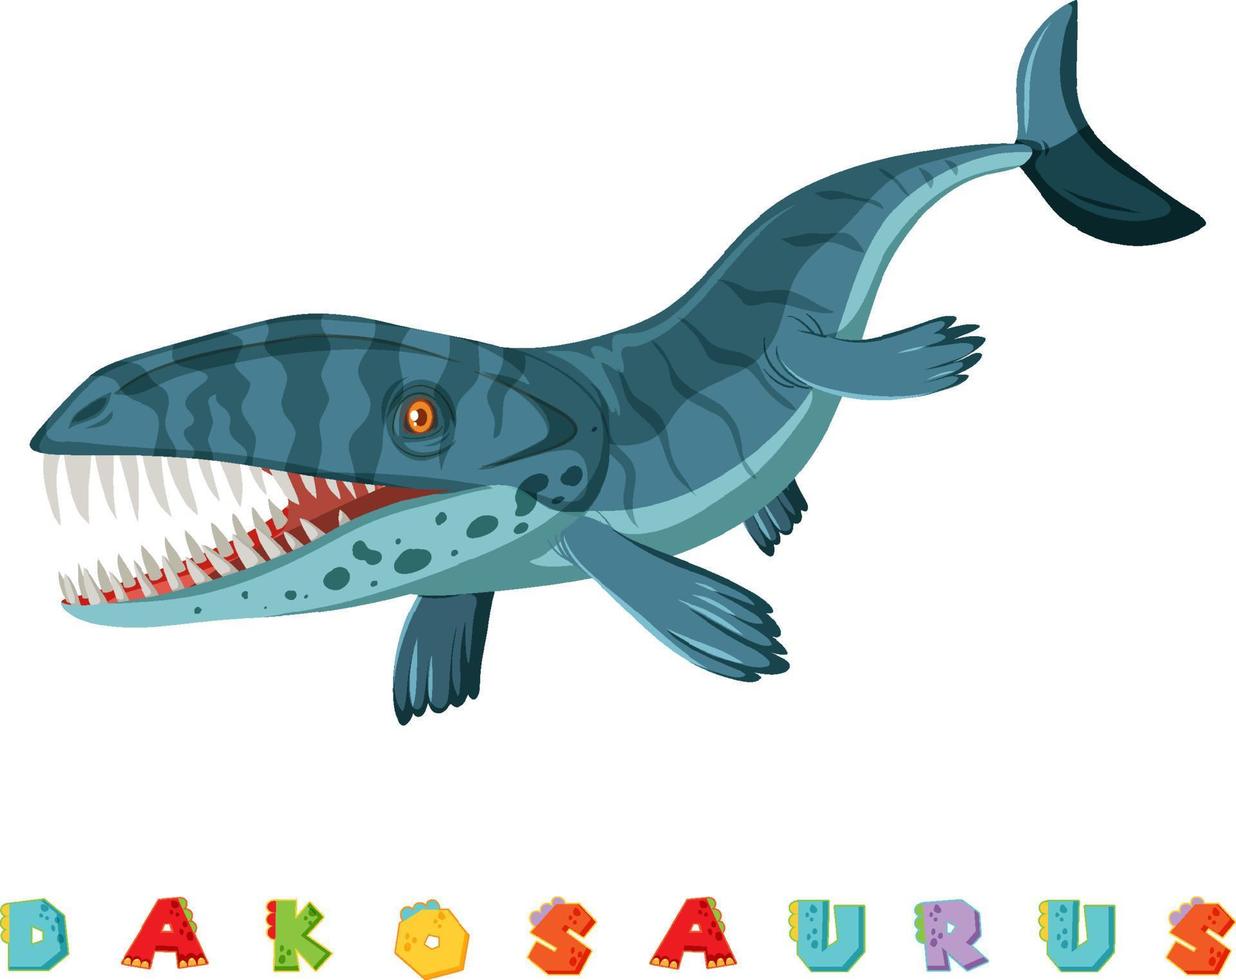 Dinosaur wordcard for dalpsaurus vector